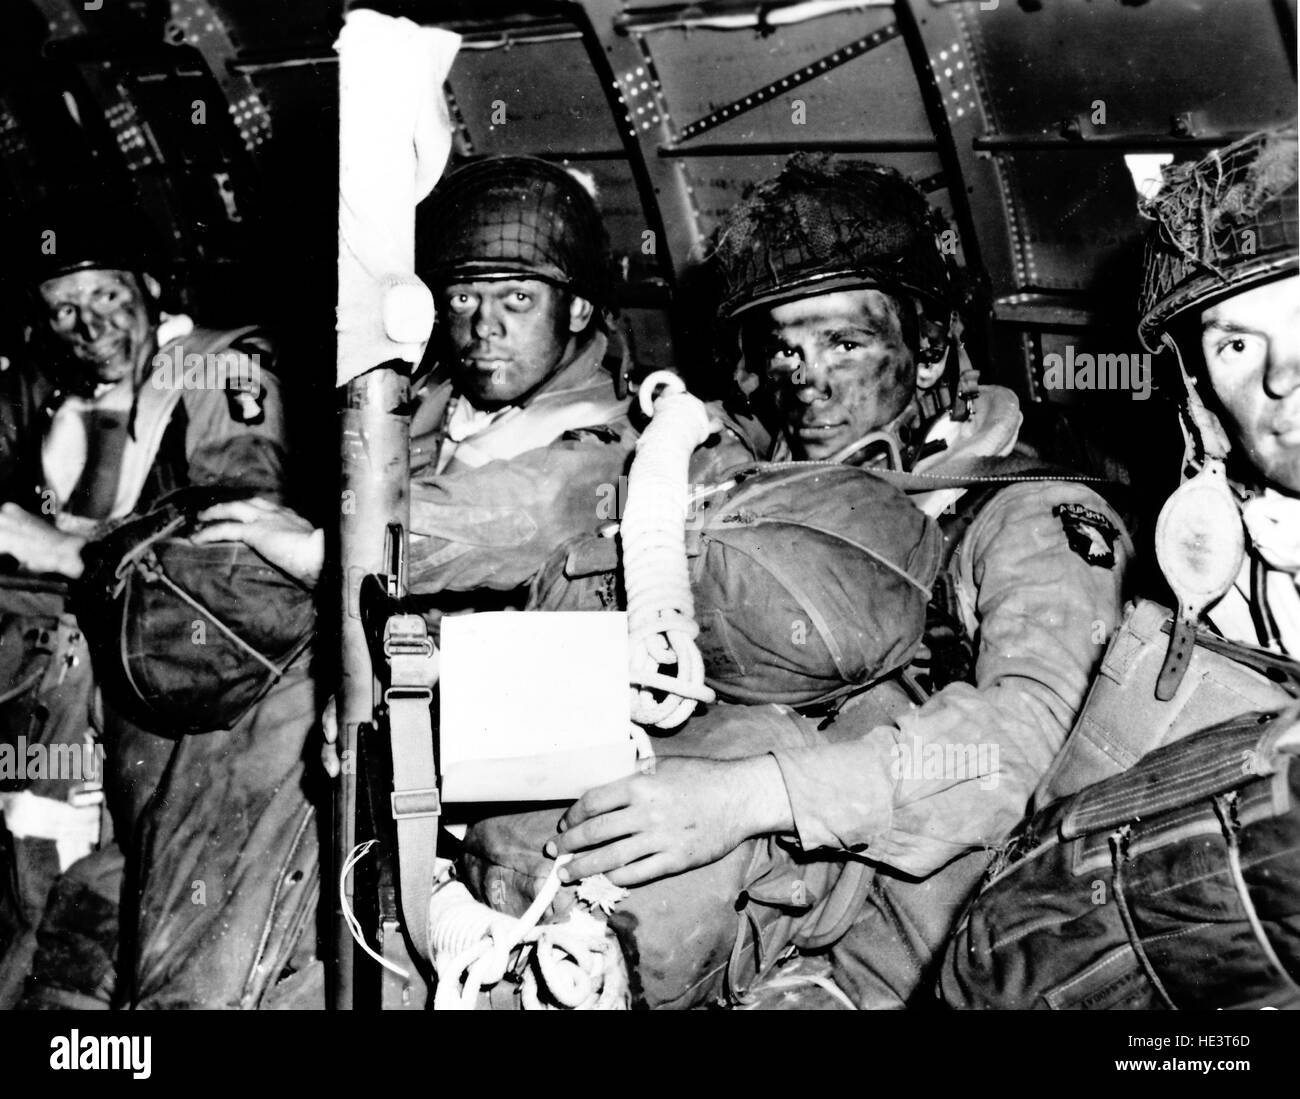 Normandie, France, le 6 juin 1944. Parachutistes du 101e Airborne Division 'Les Screaming Eagles' à bord d'un C-47 avant le lancement Banque D'Images